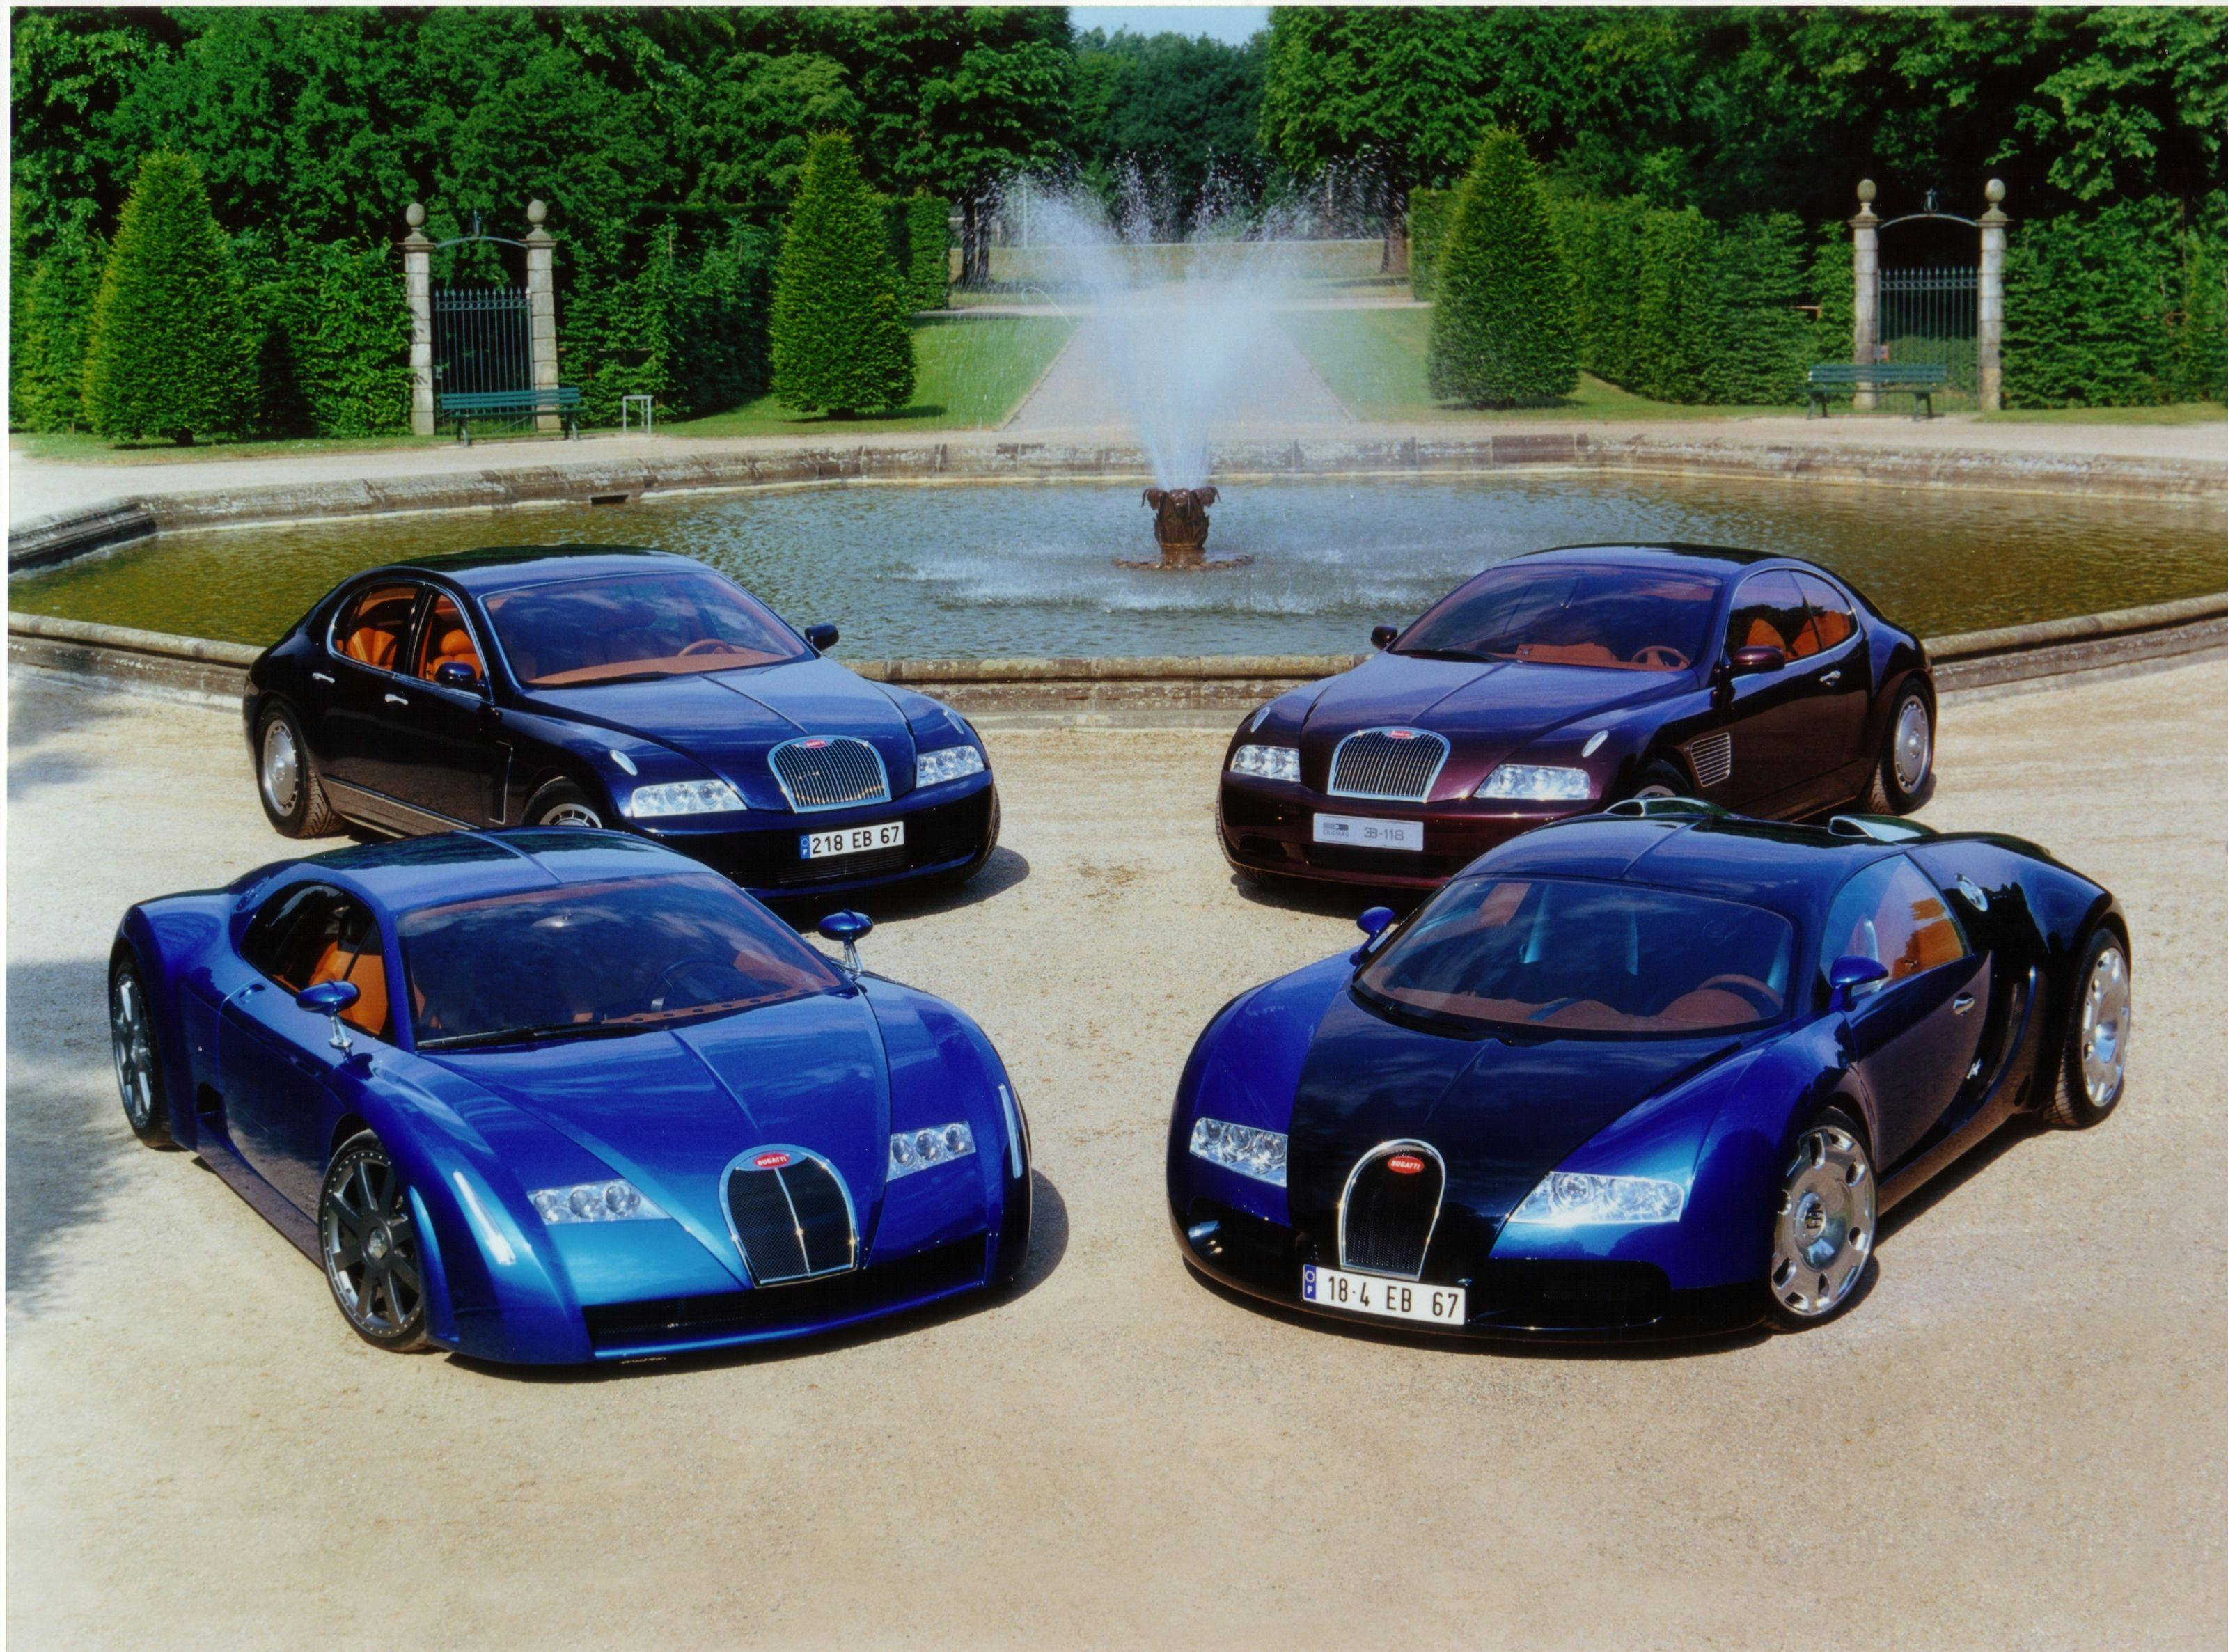 Les 15 ans de la Bugatti Veyron – comment tout a commencé